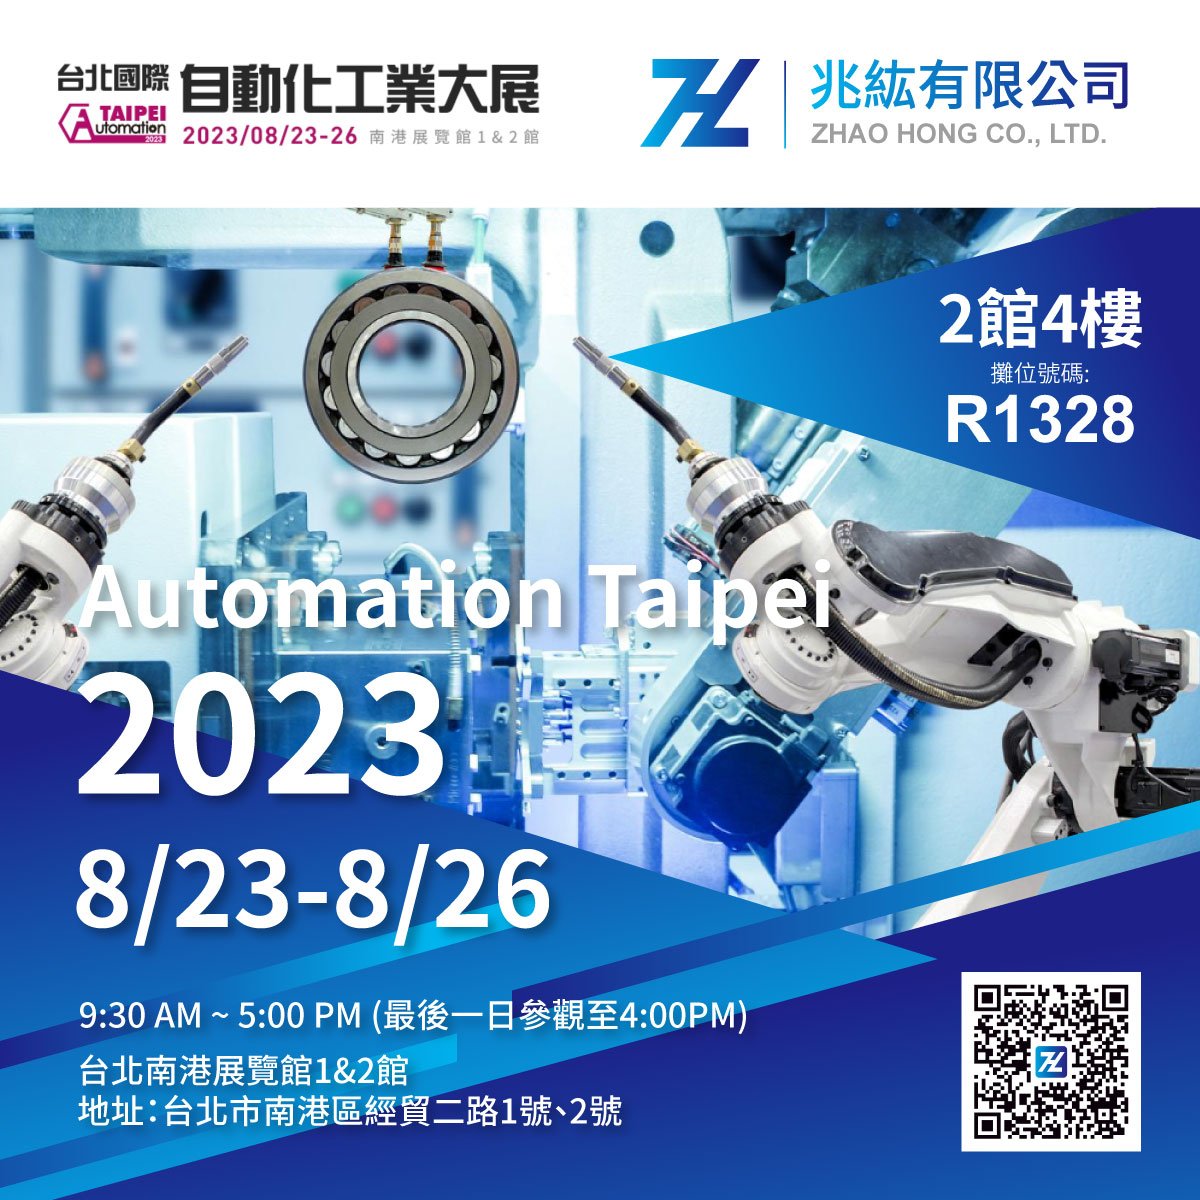 2023 台北國際自動化工業大展-兆紘